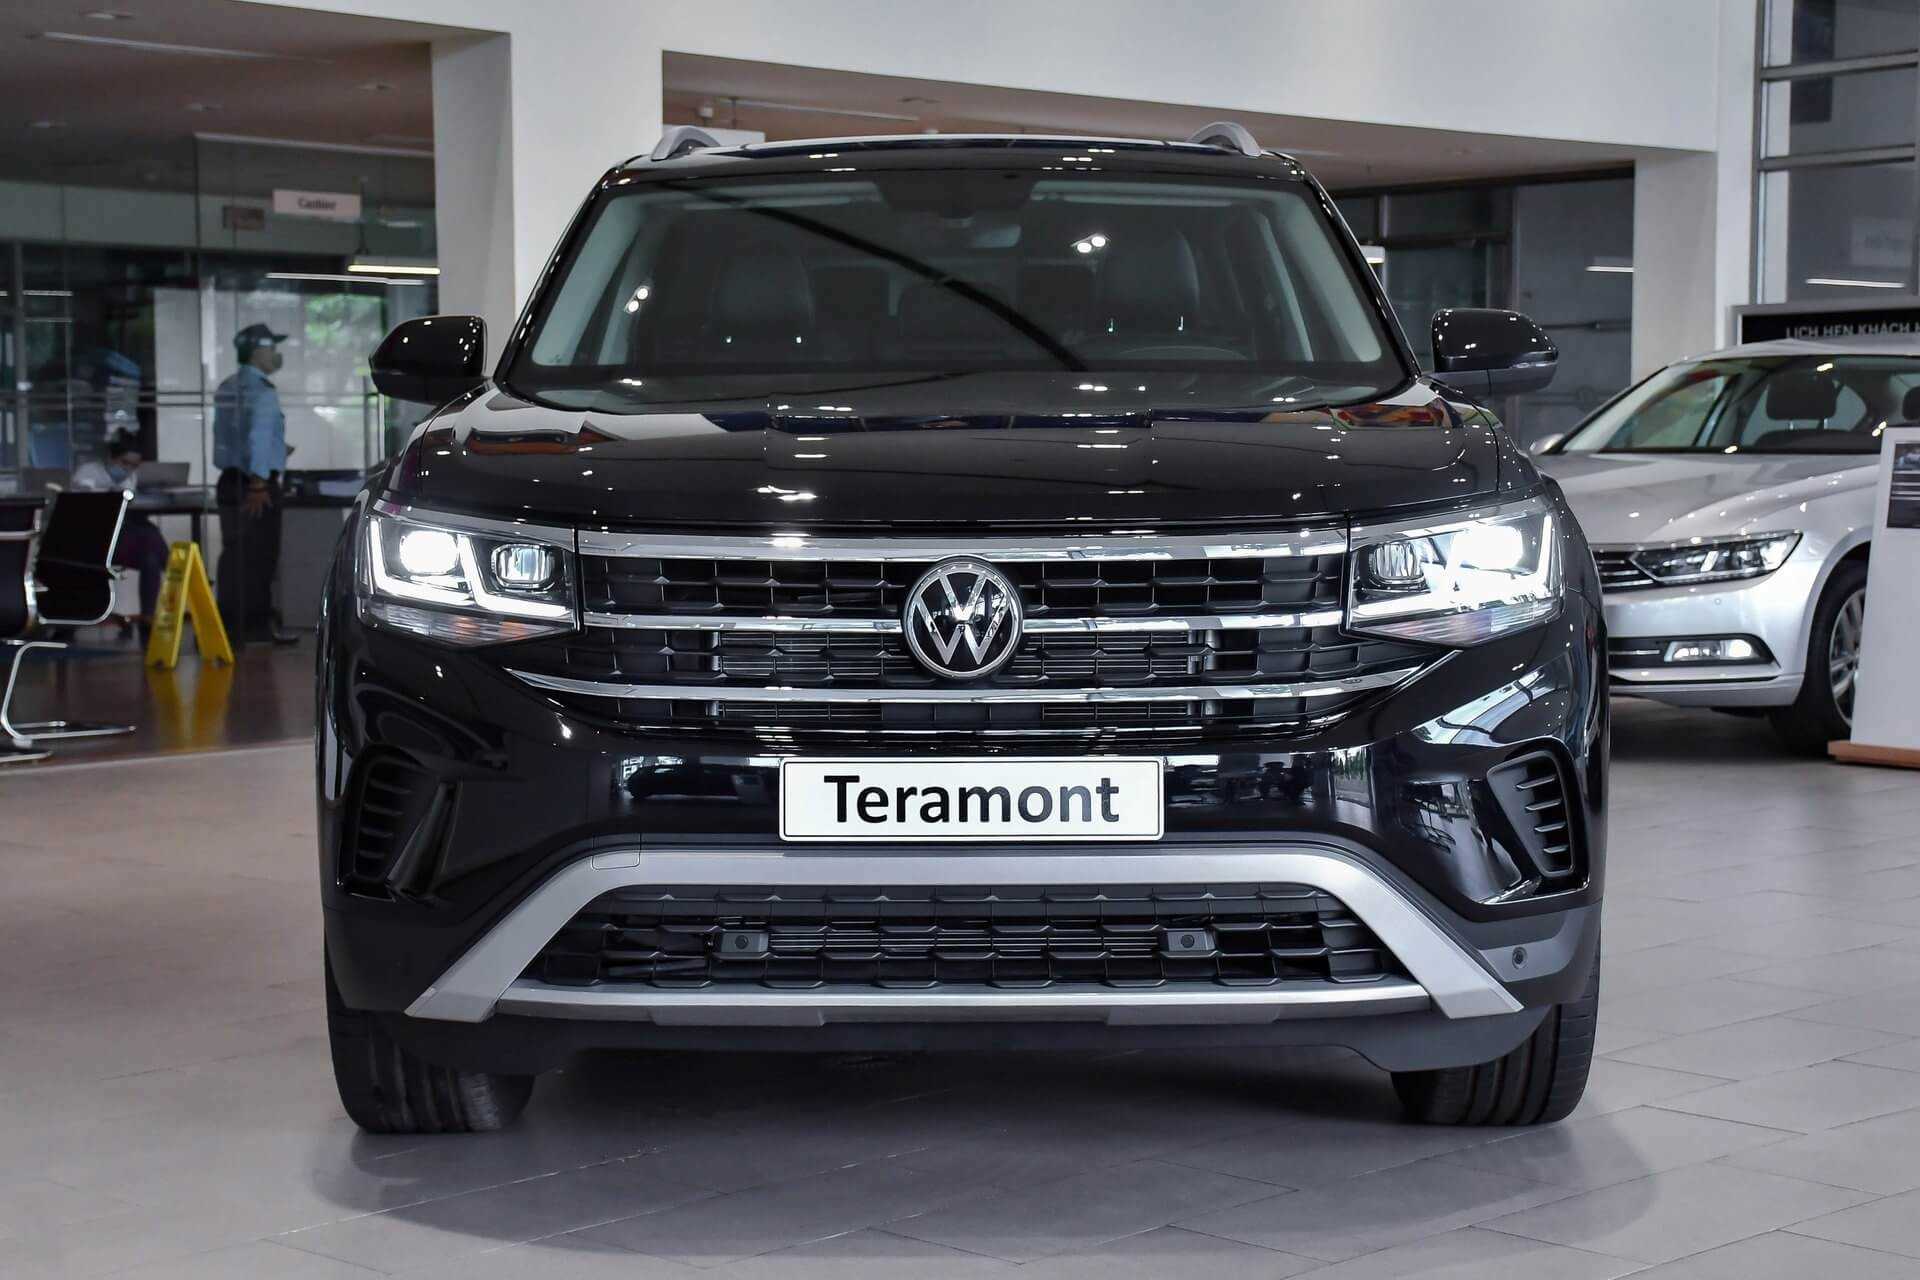 Volkswagen Tramont